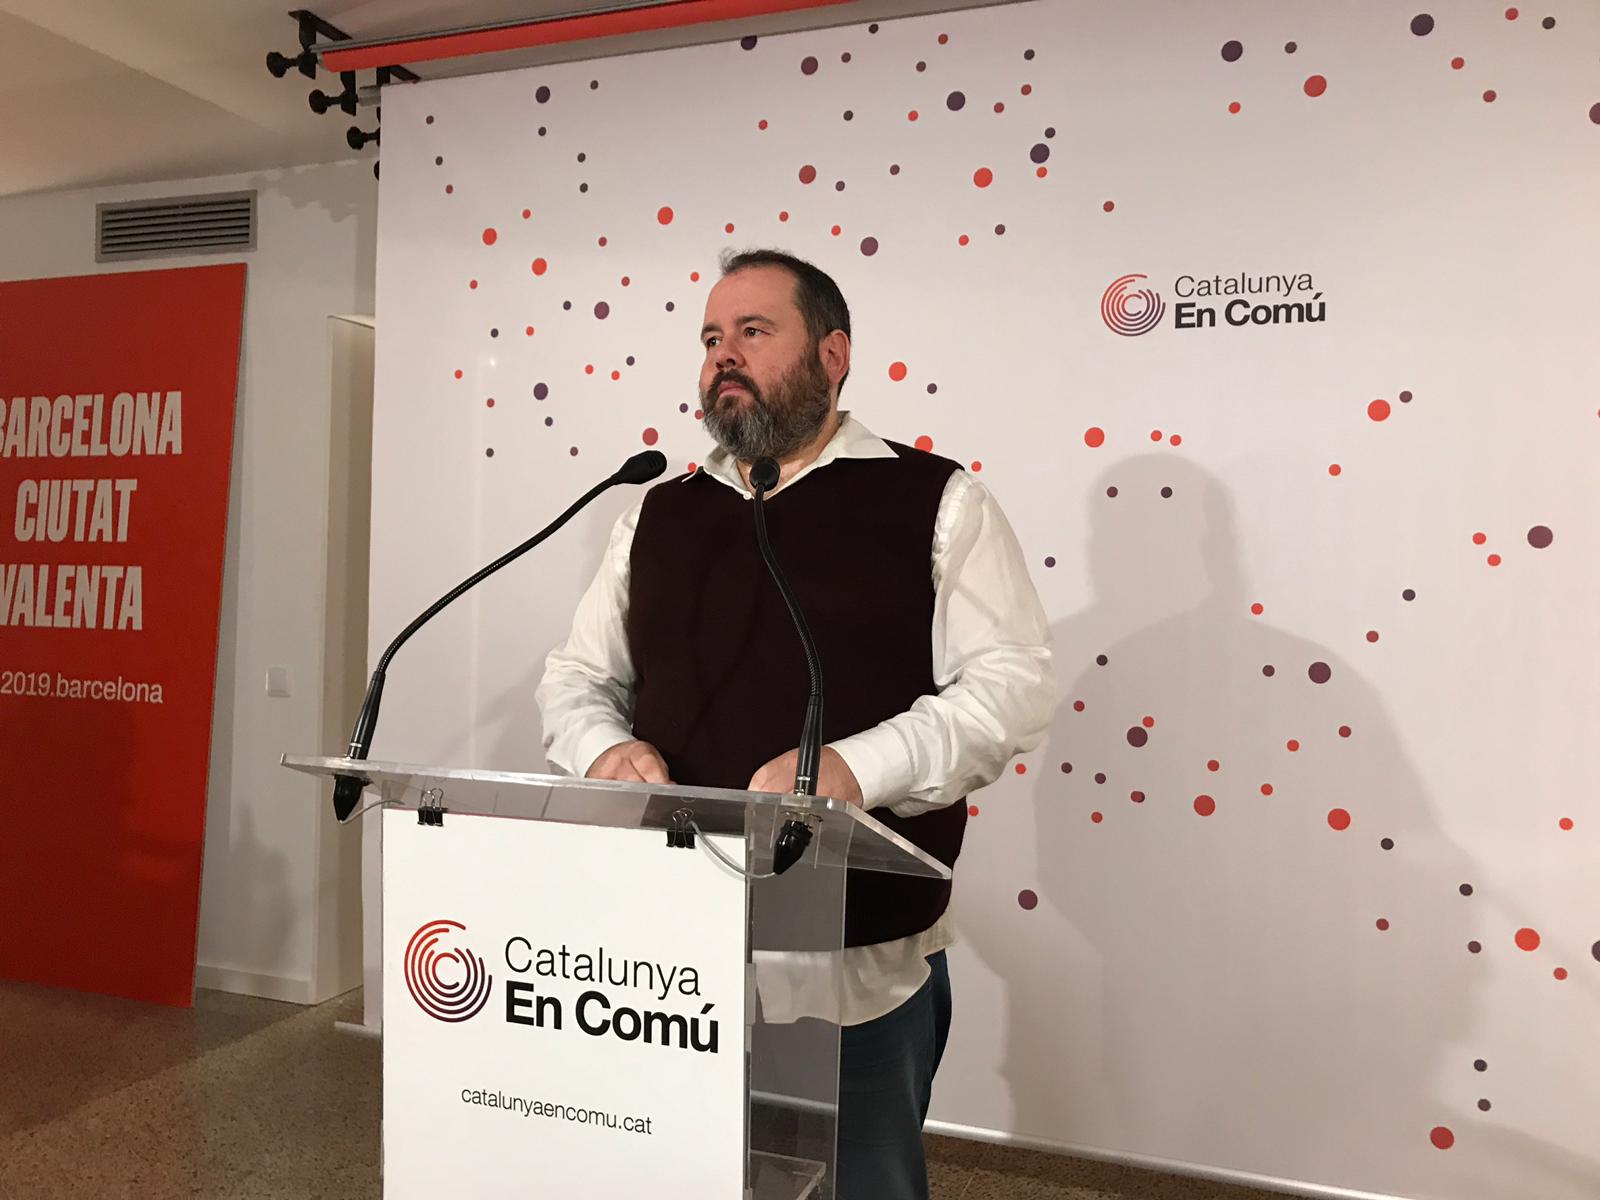 Los comunes reclaman un tripartito de izquierdas en la Diputación de Barcelona